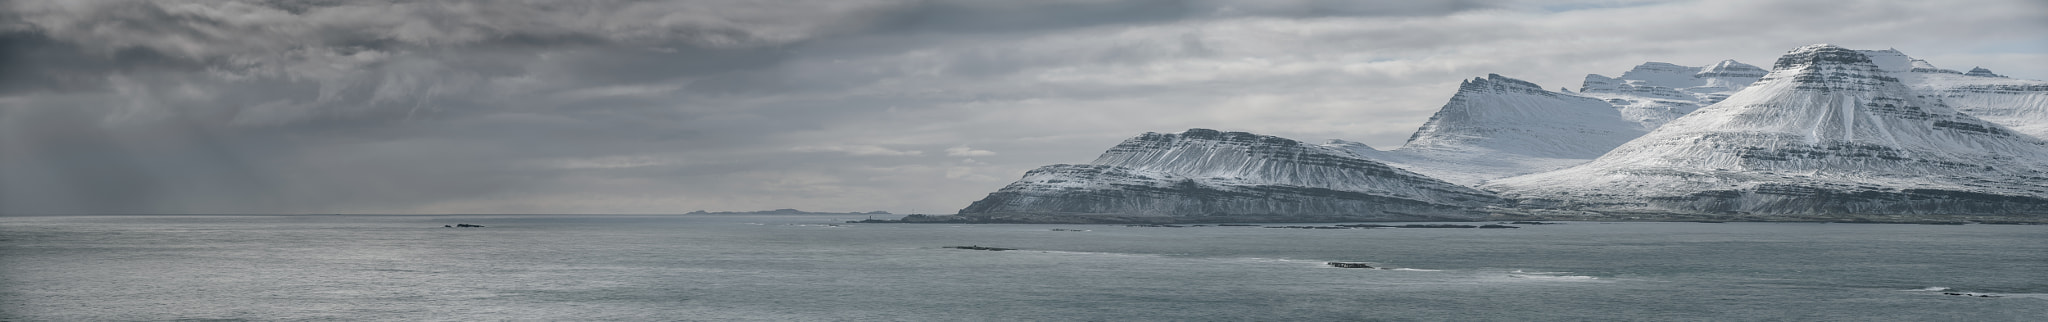 Nikon D800E + Nikon AF-S Nikkor 70-200mm F2.8G ED VR II sample photo. Iceland east coast panorama photography